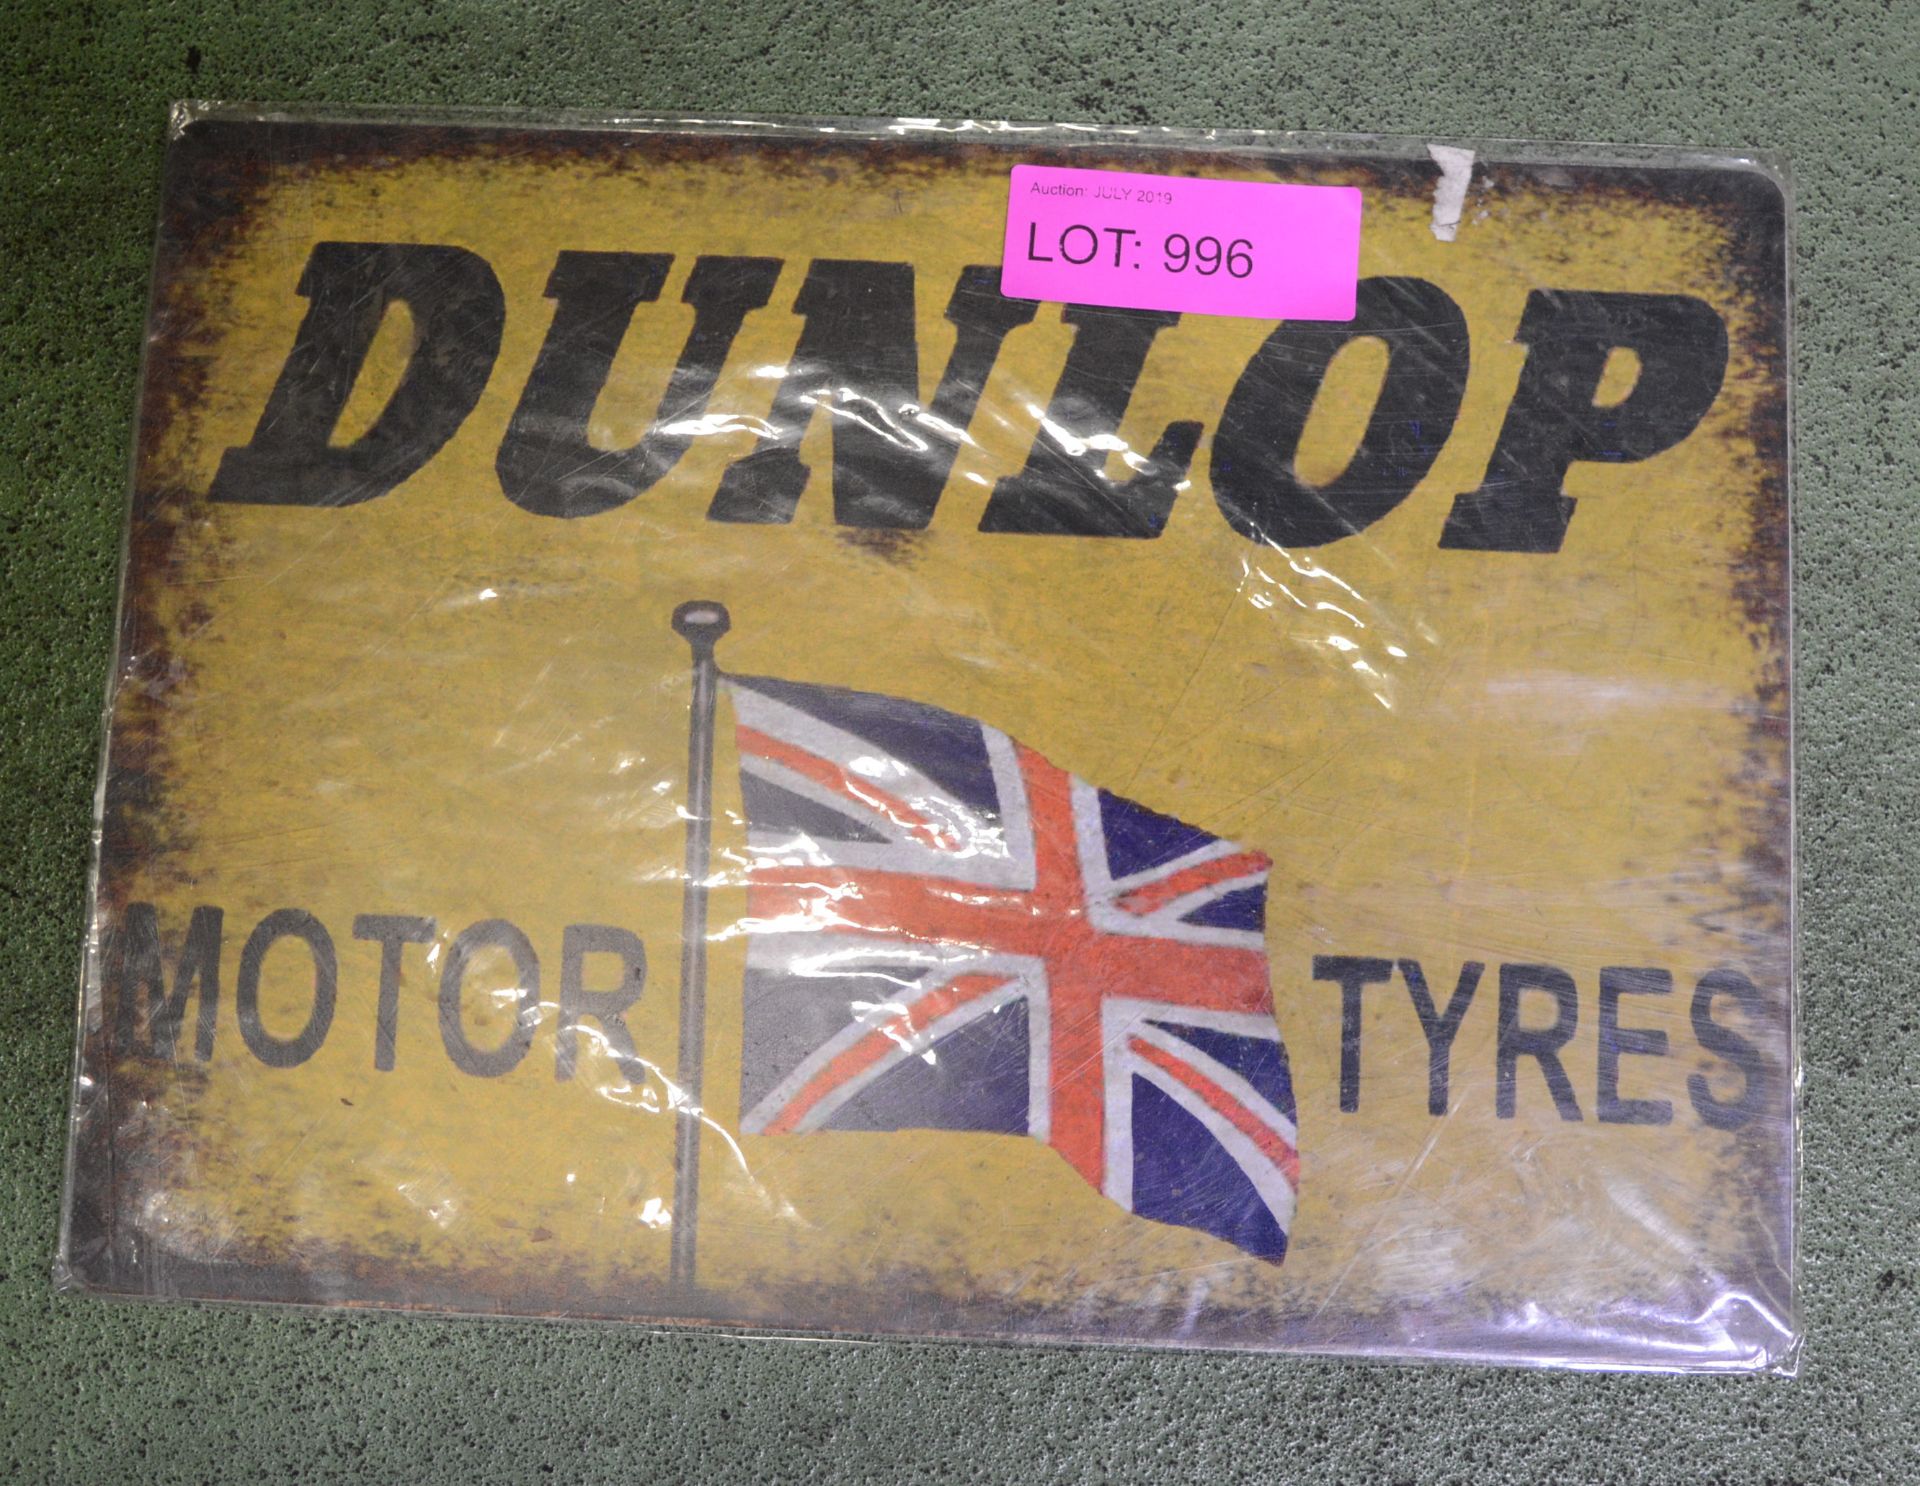 Dunlop Motor Tyres Tin Sign 400 x 300mm.